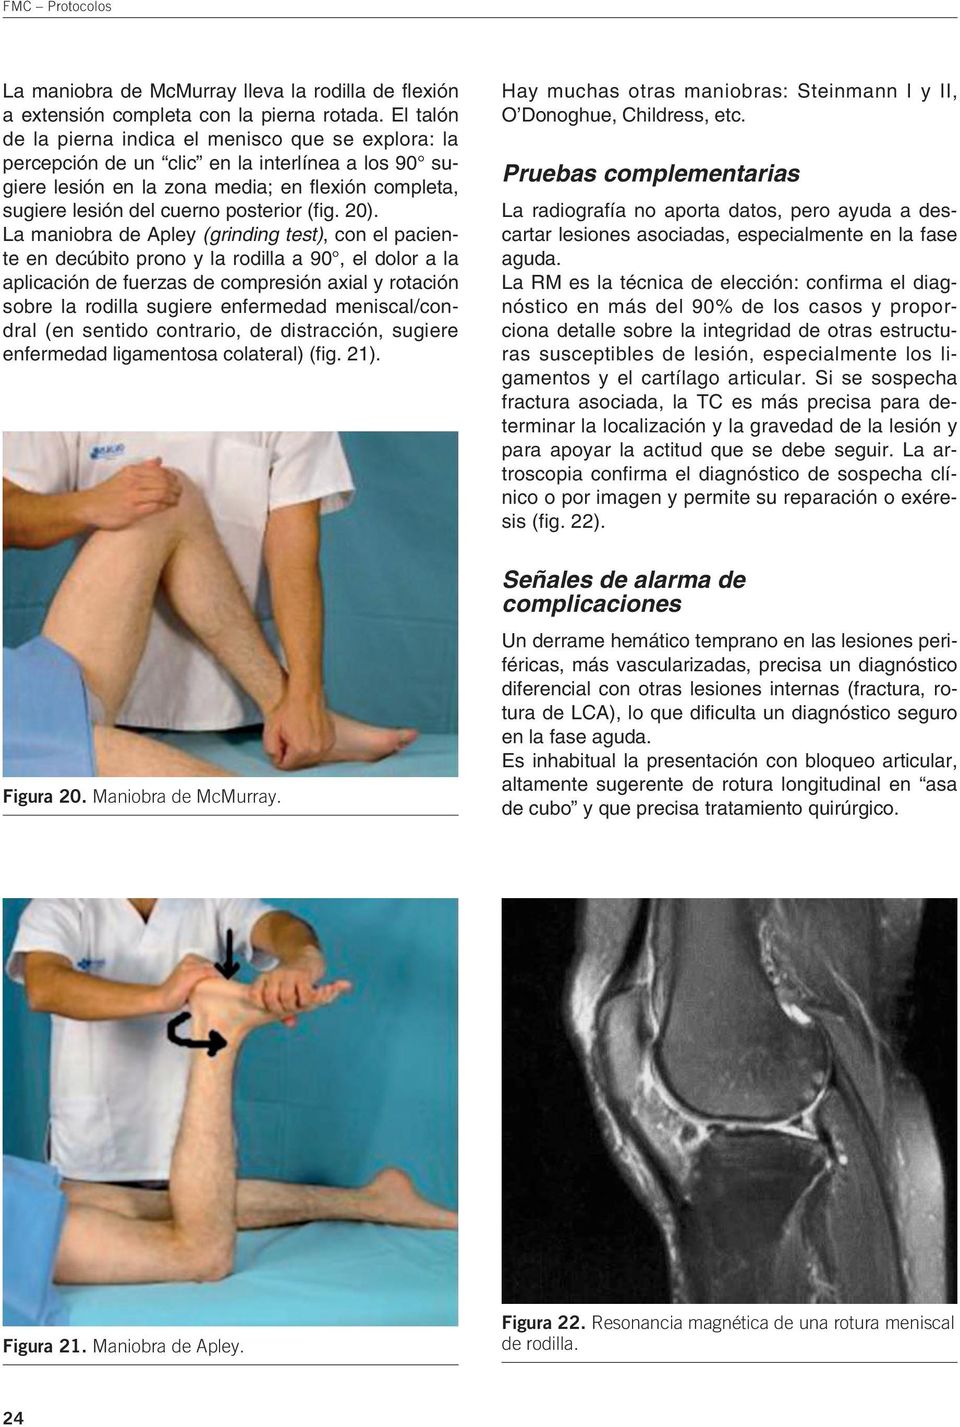 La maniobra de Apley (grinding test), con el paciente en decúbito prono y la rodilla a 90, el dolor a la aplicación de fuerzas de compresión axial y rotación sobre la rodilla sugiere enfermedad